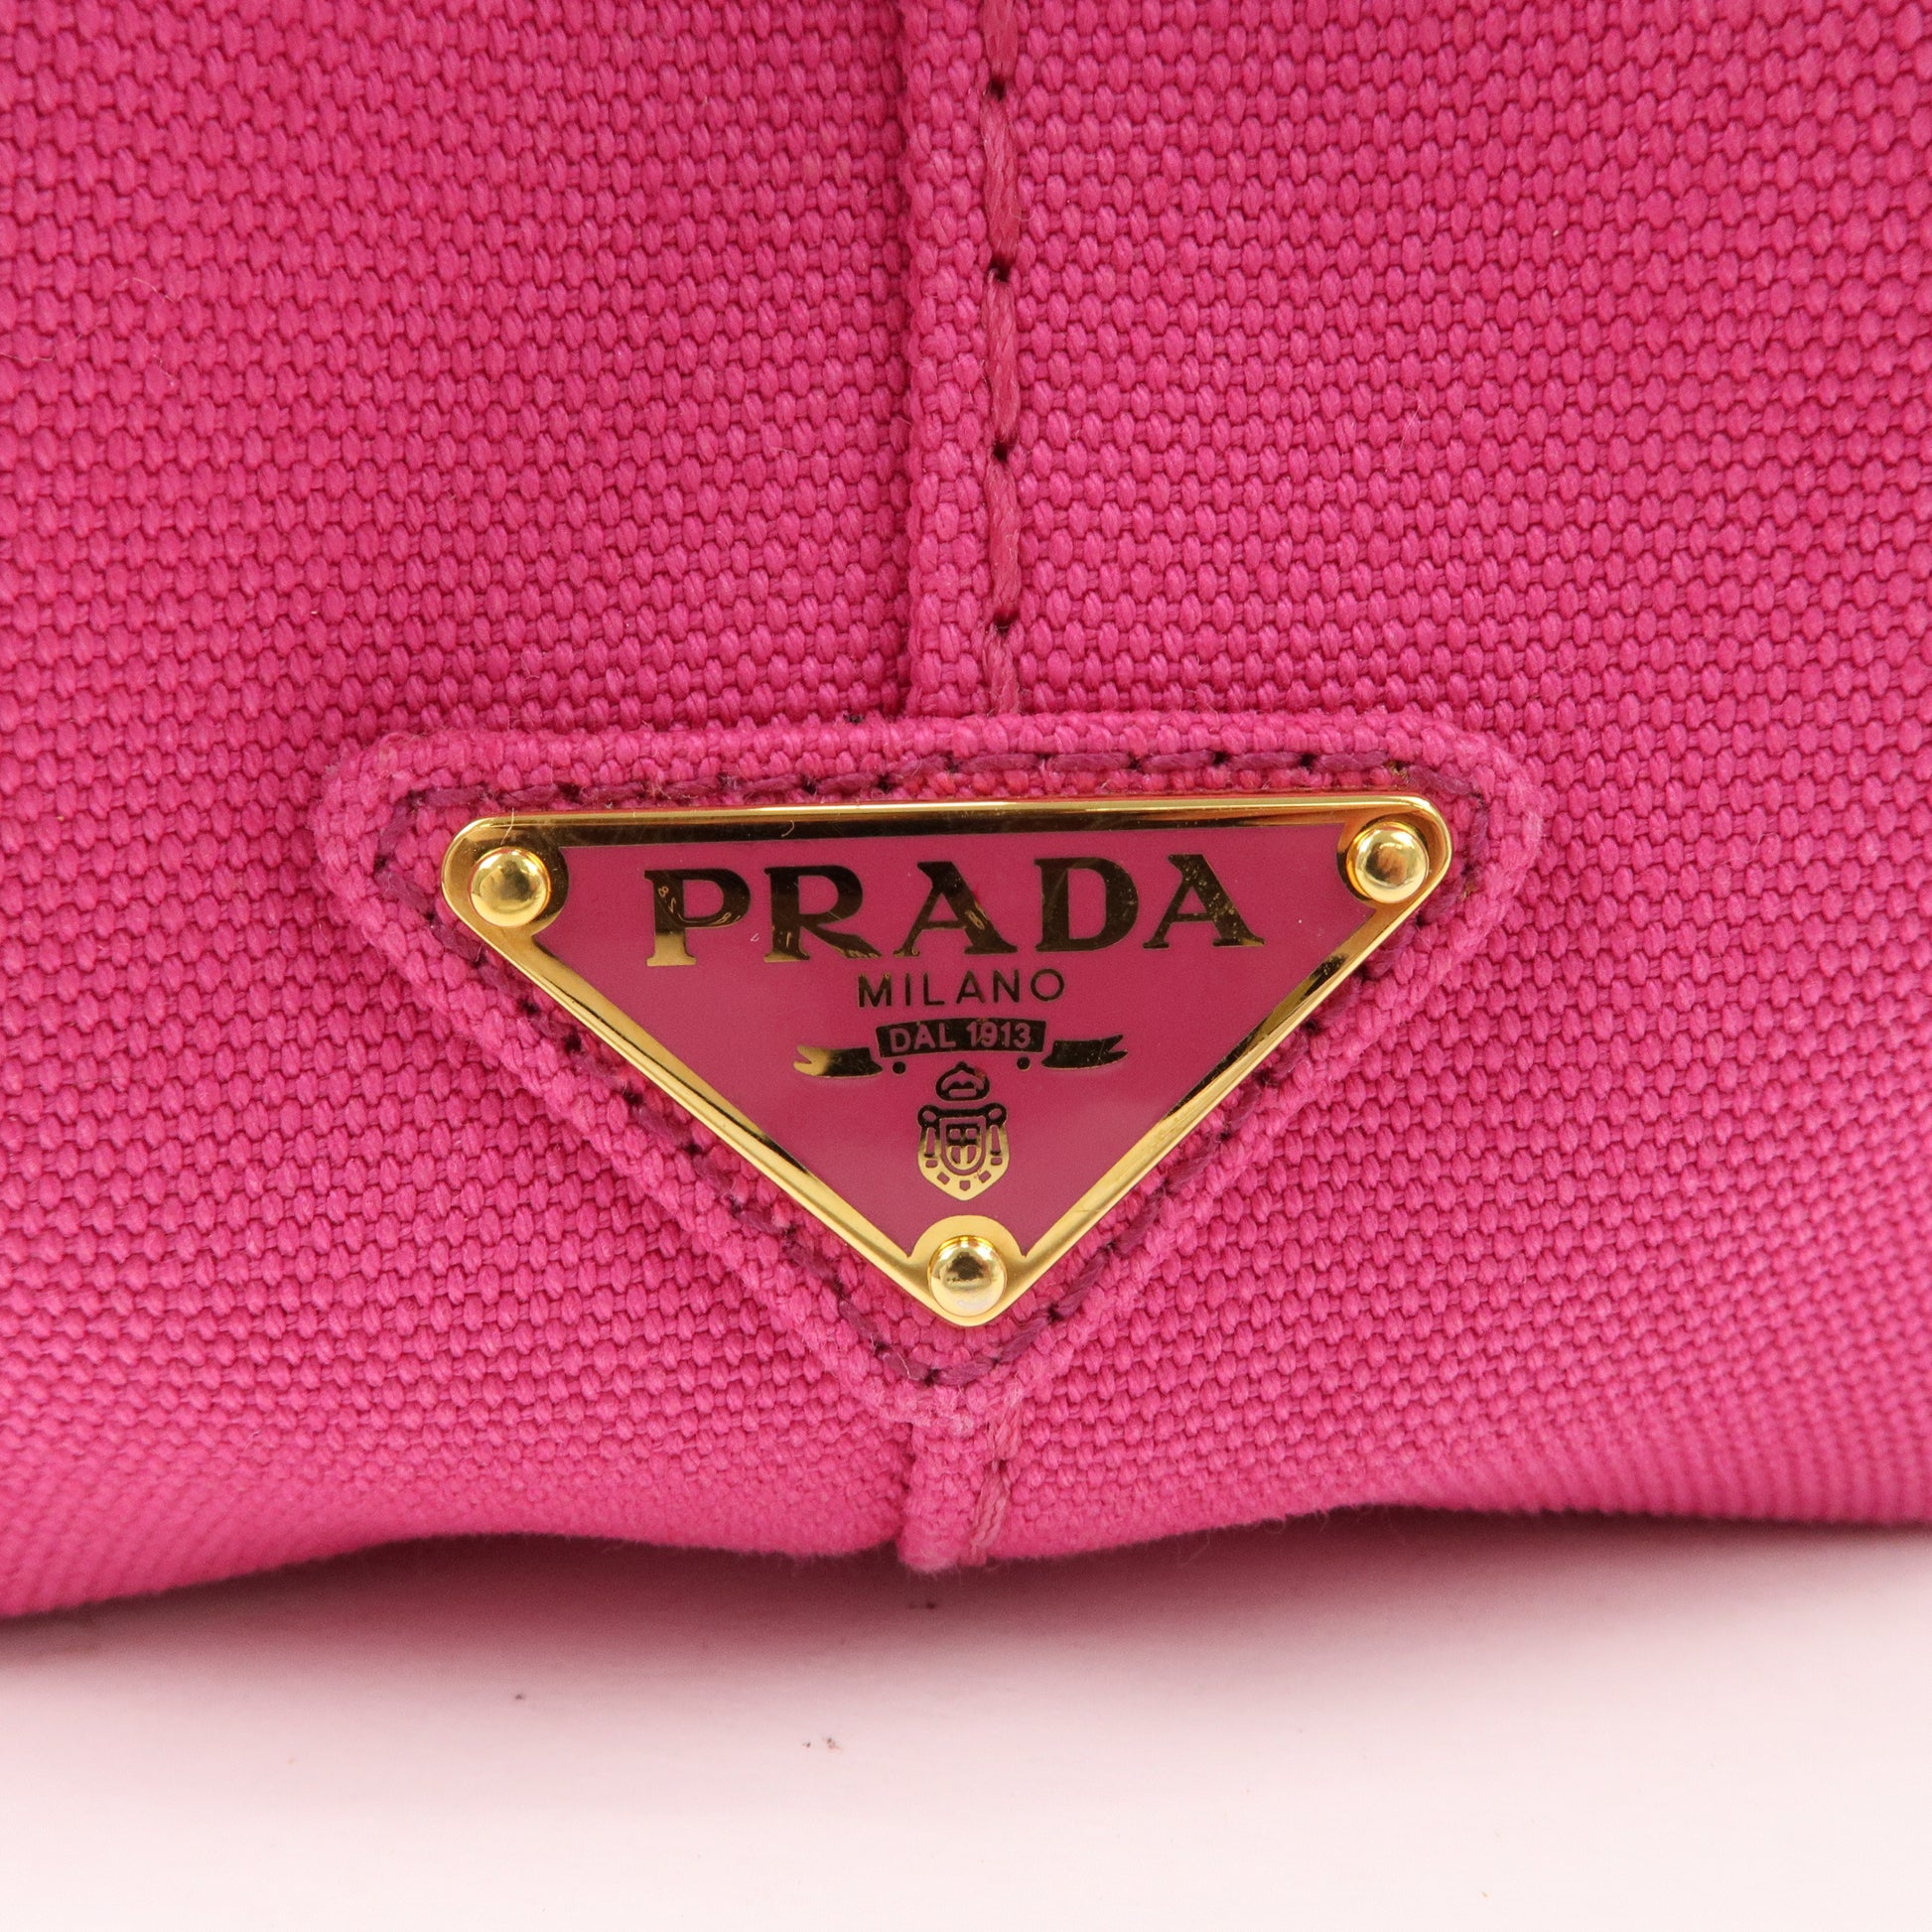 PRADA-Logo-Canapa-Mini-Canvas-2Way-Tote-Bag-Pink-1BG439 – dct